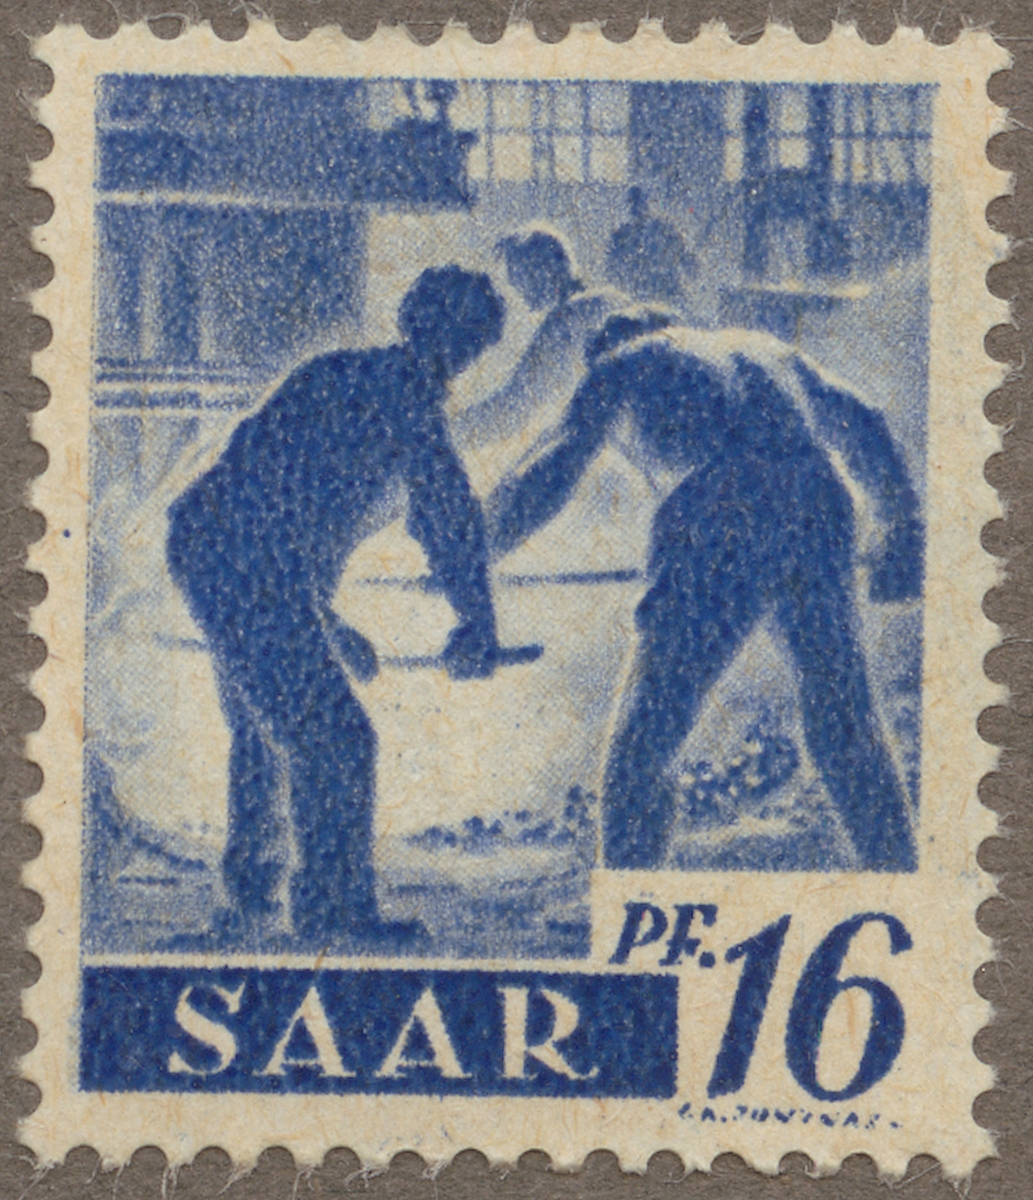 Frimärke ur Gösta Bodmans filatelistiska motivsamling, påbörjad 1950.
Frimärke från Saar,1947. Motiv av Gjuteriarbetare i Saar.